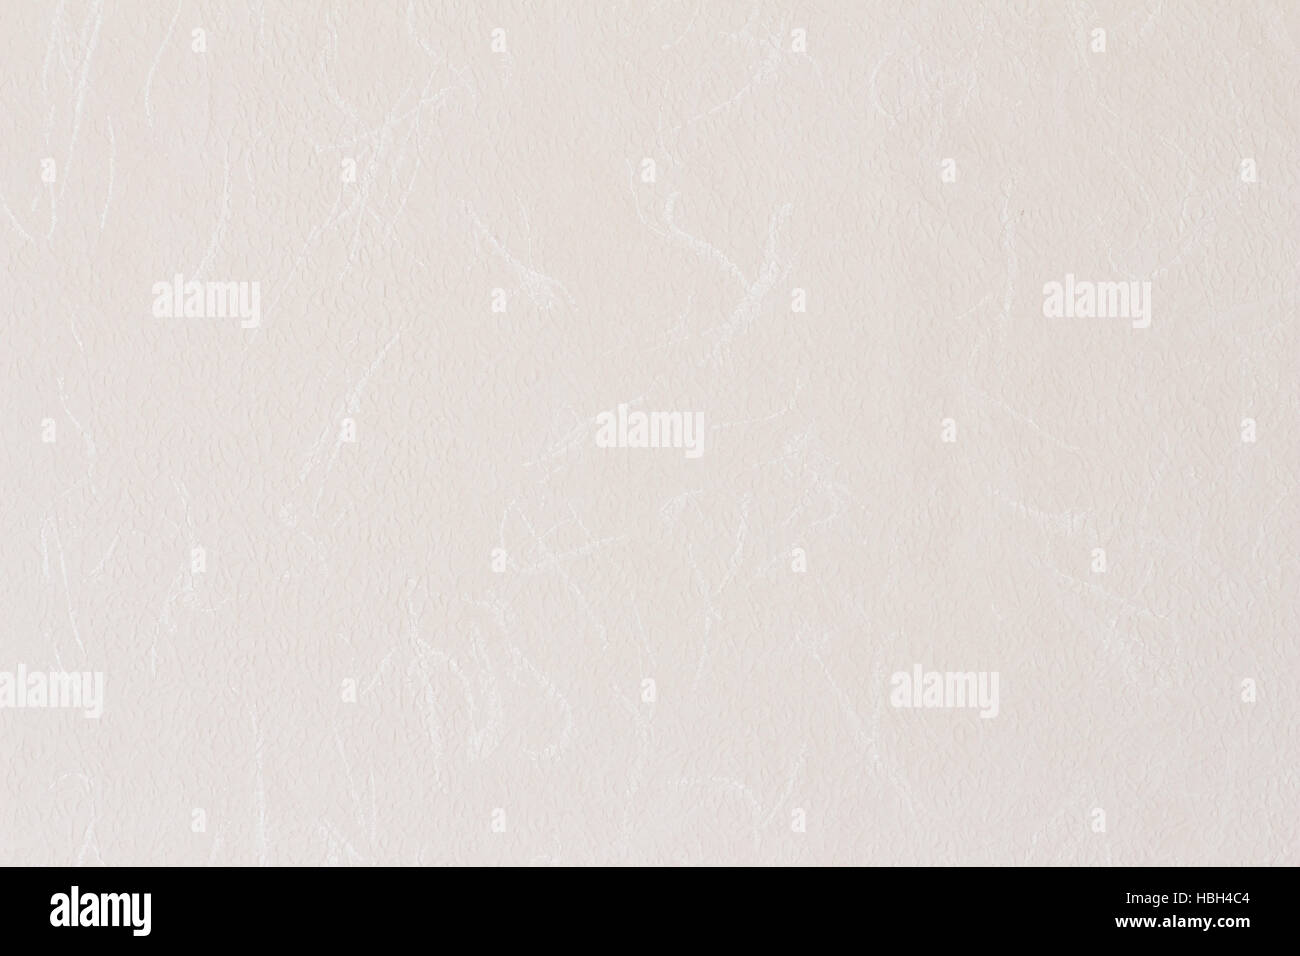 Nahtloses Bild von weißen Japanpapier Washi genannt Stockfoto